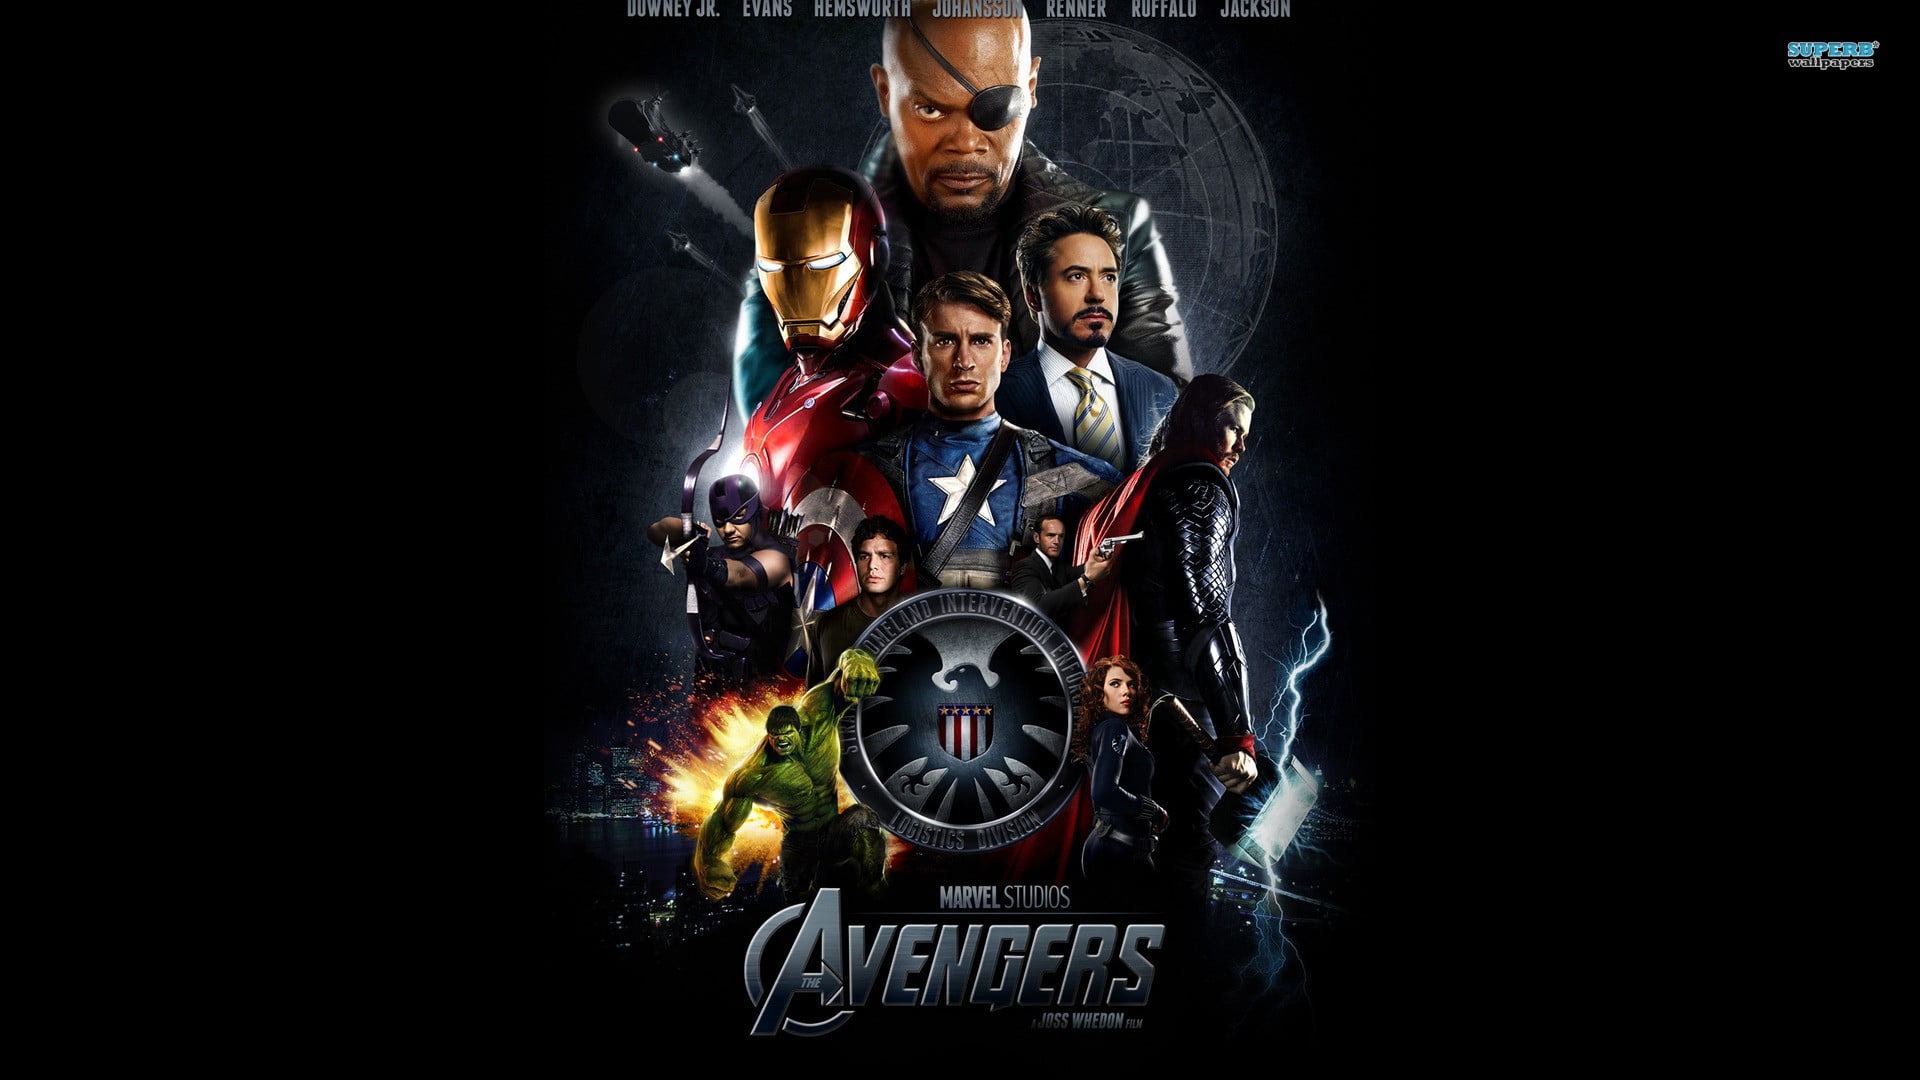 Marvel Avengers poster, The Avengers, Tony Stark, Captain America